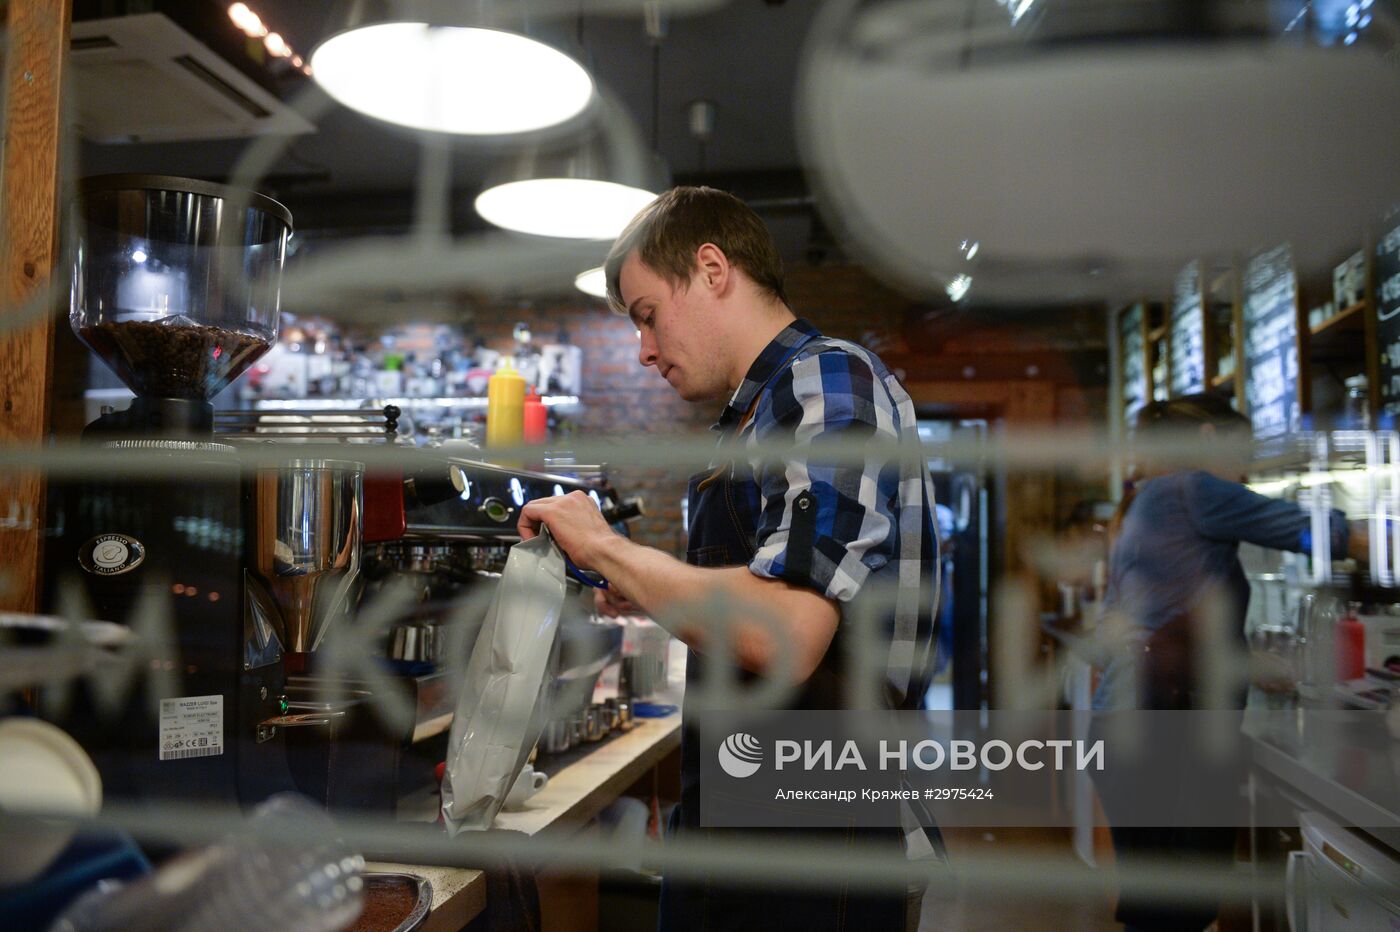 Кофе "Руссиано" появился в меню российских кафе